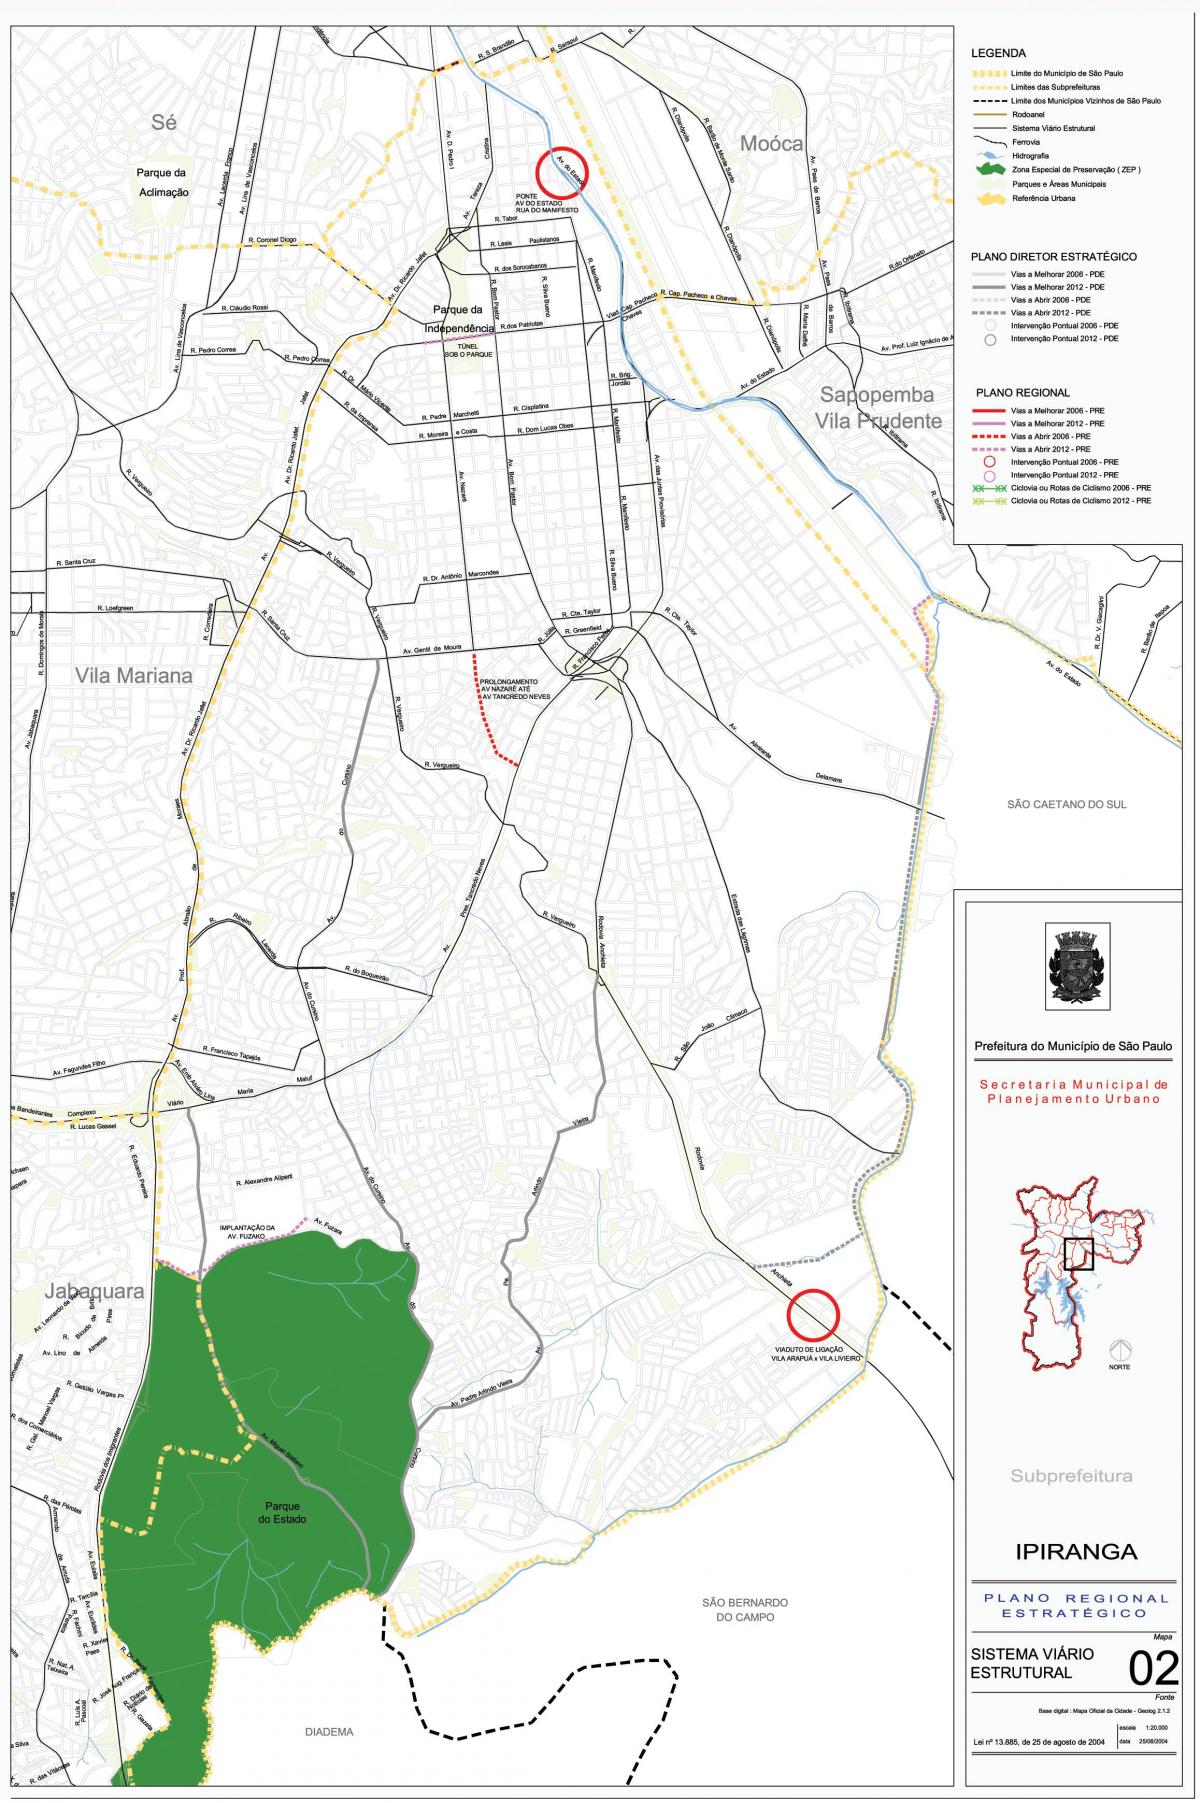 Kaart van Ipiranga São Paulo - Wegen